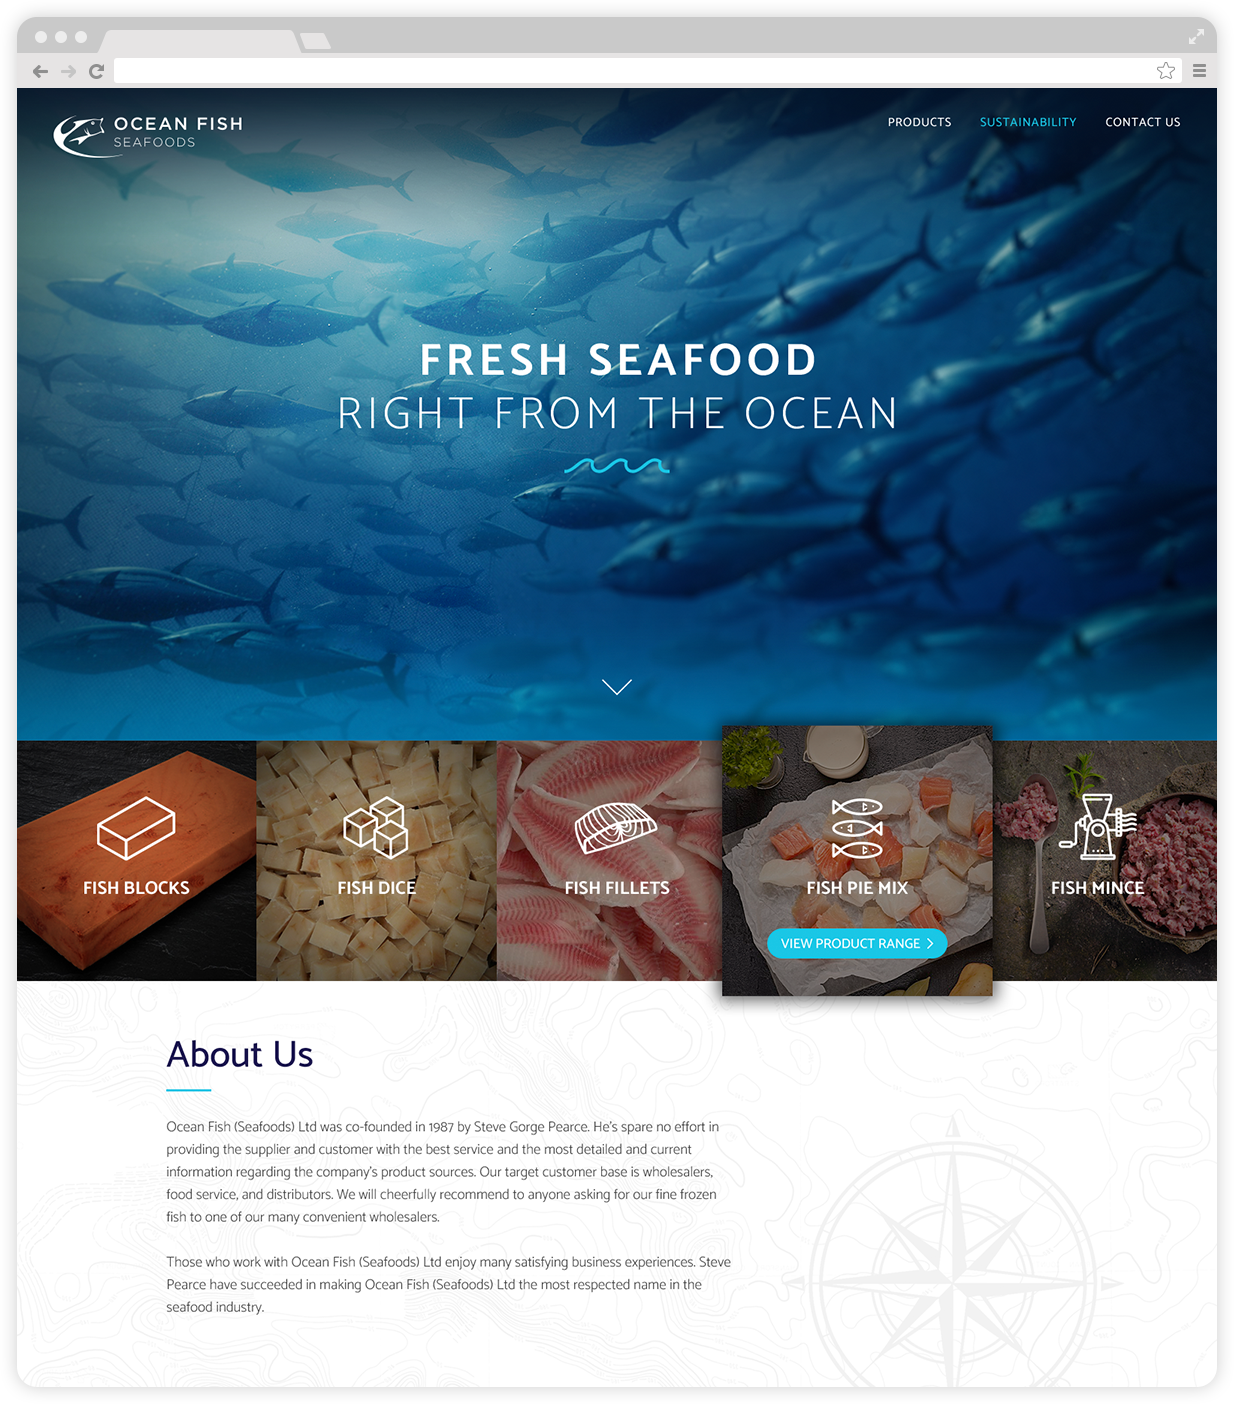 Ocean Fish Seafoods Ltd